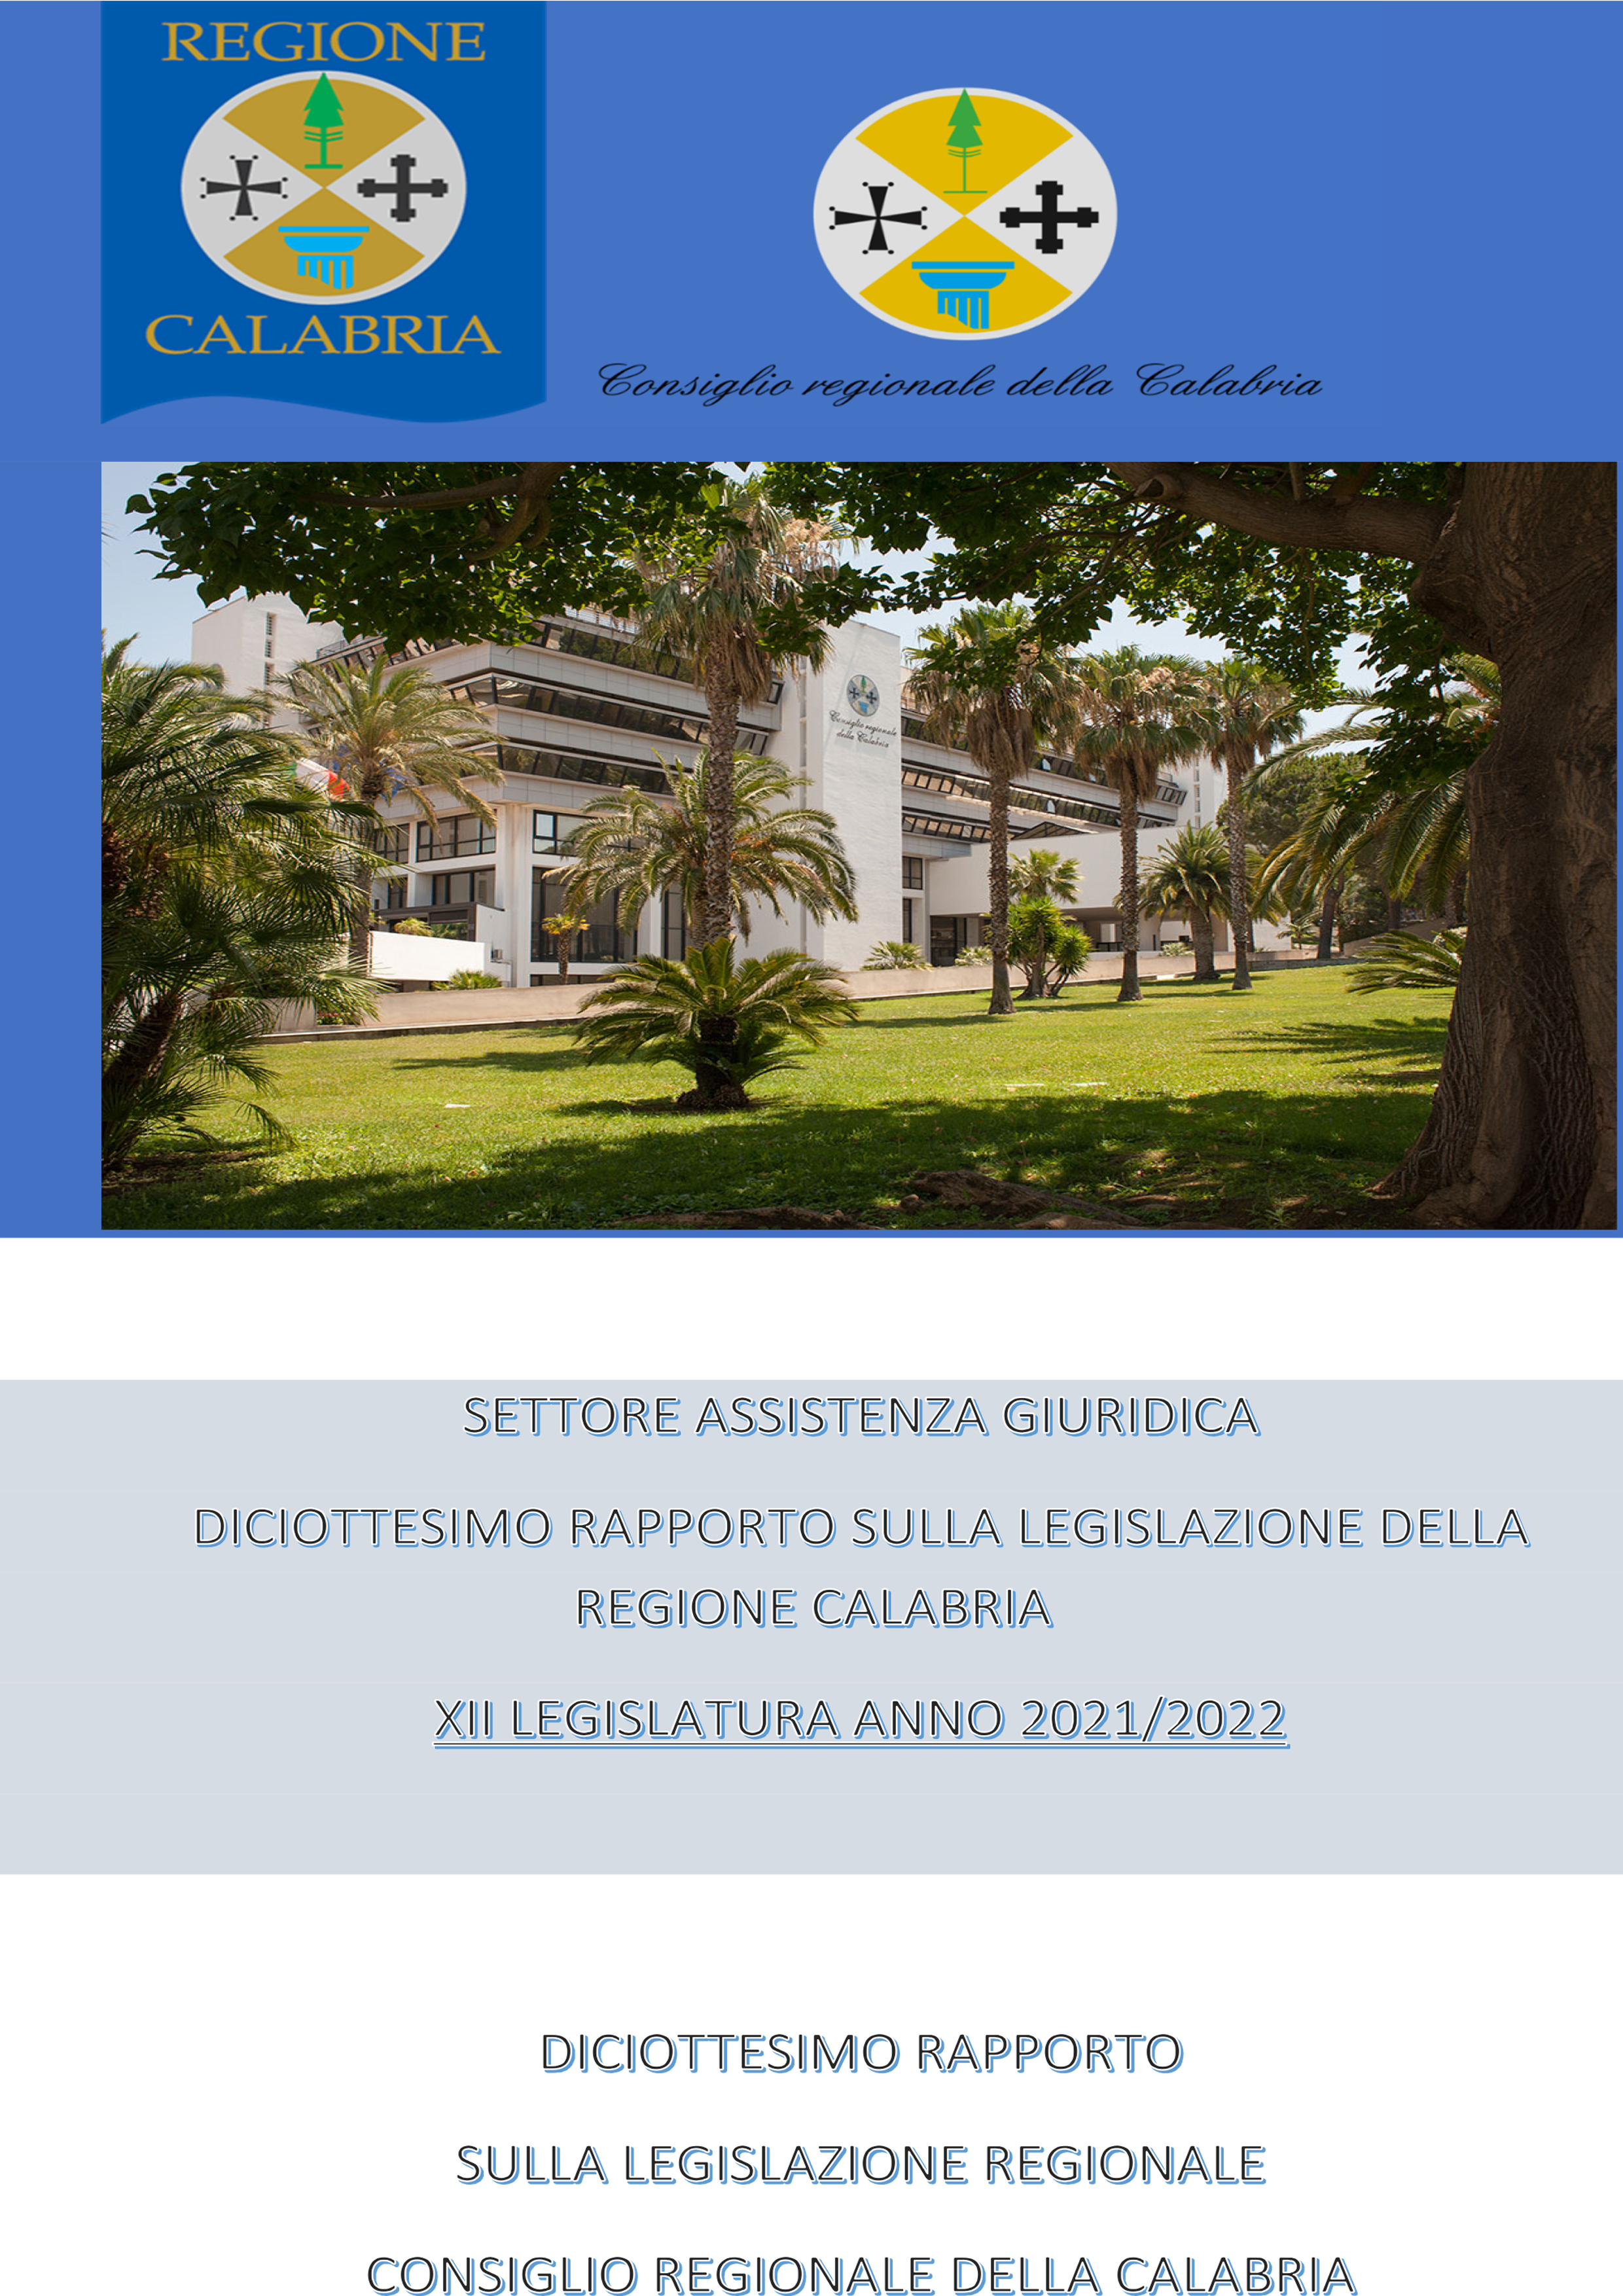 Diciottesimo rapporto sulla legislazione regionale anni 2021-2022